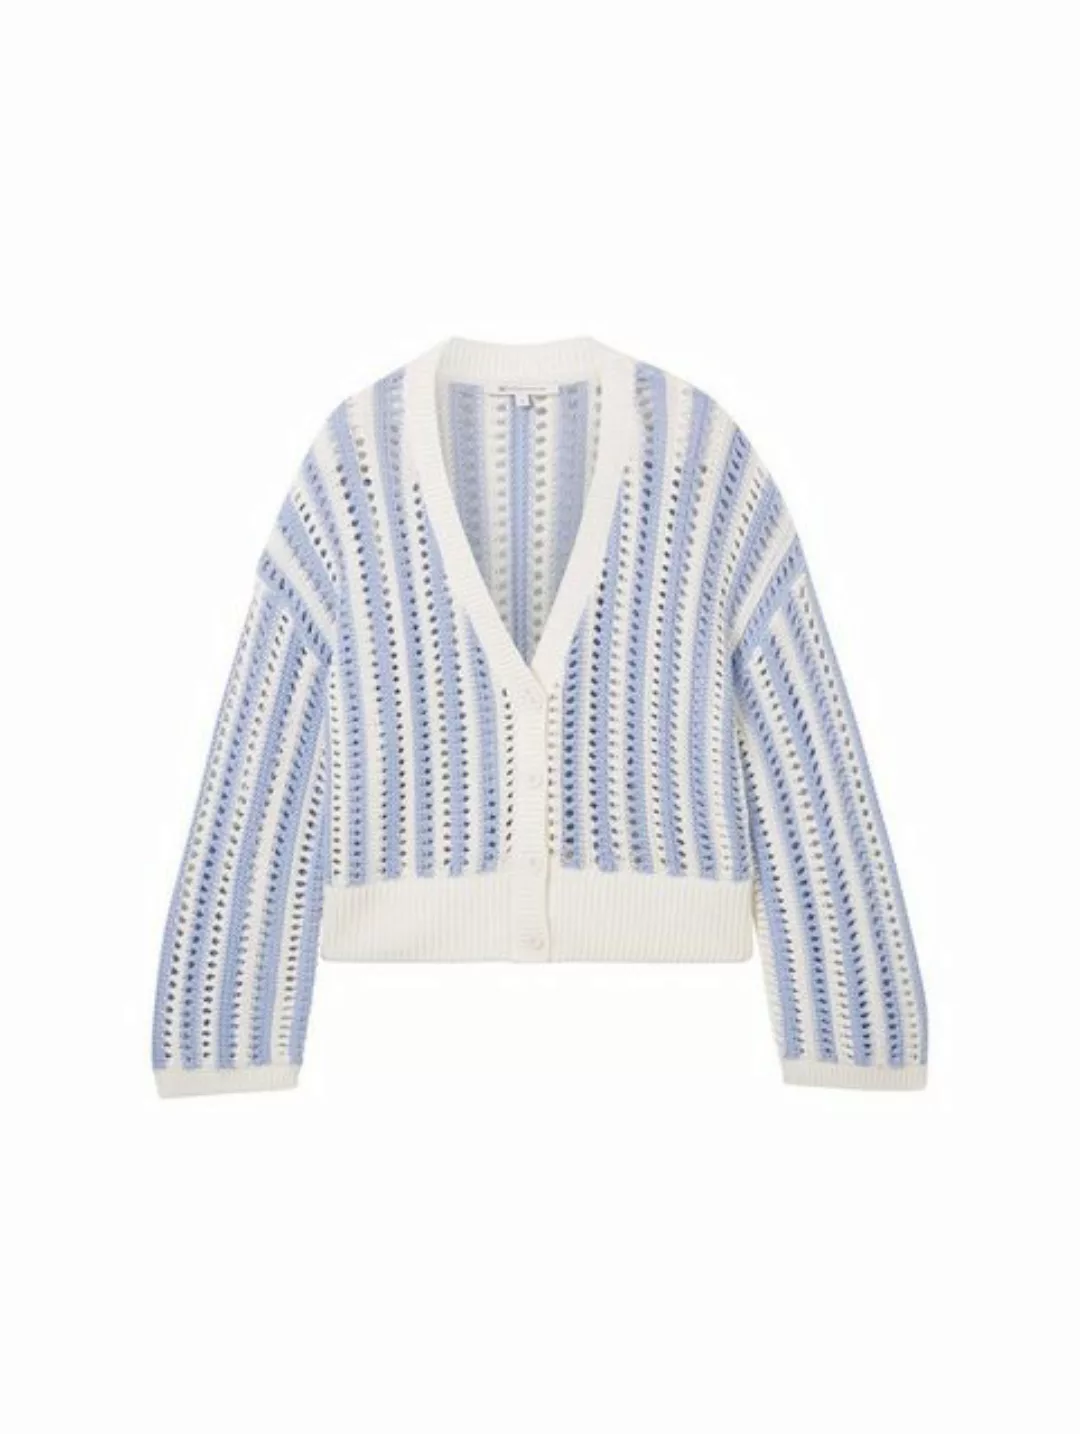 TOM TAILOR Denim Strickjacke open structure cardigan, mid blue white stripe günstig online kaufen